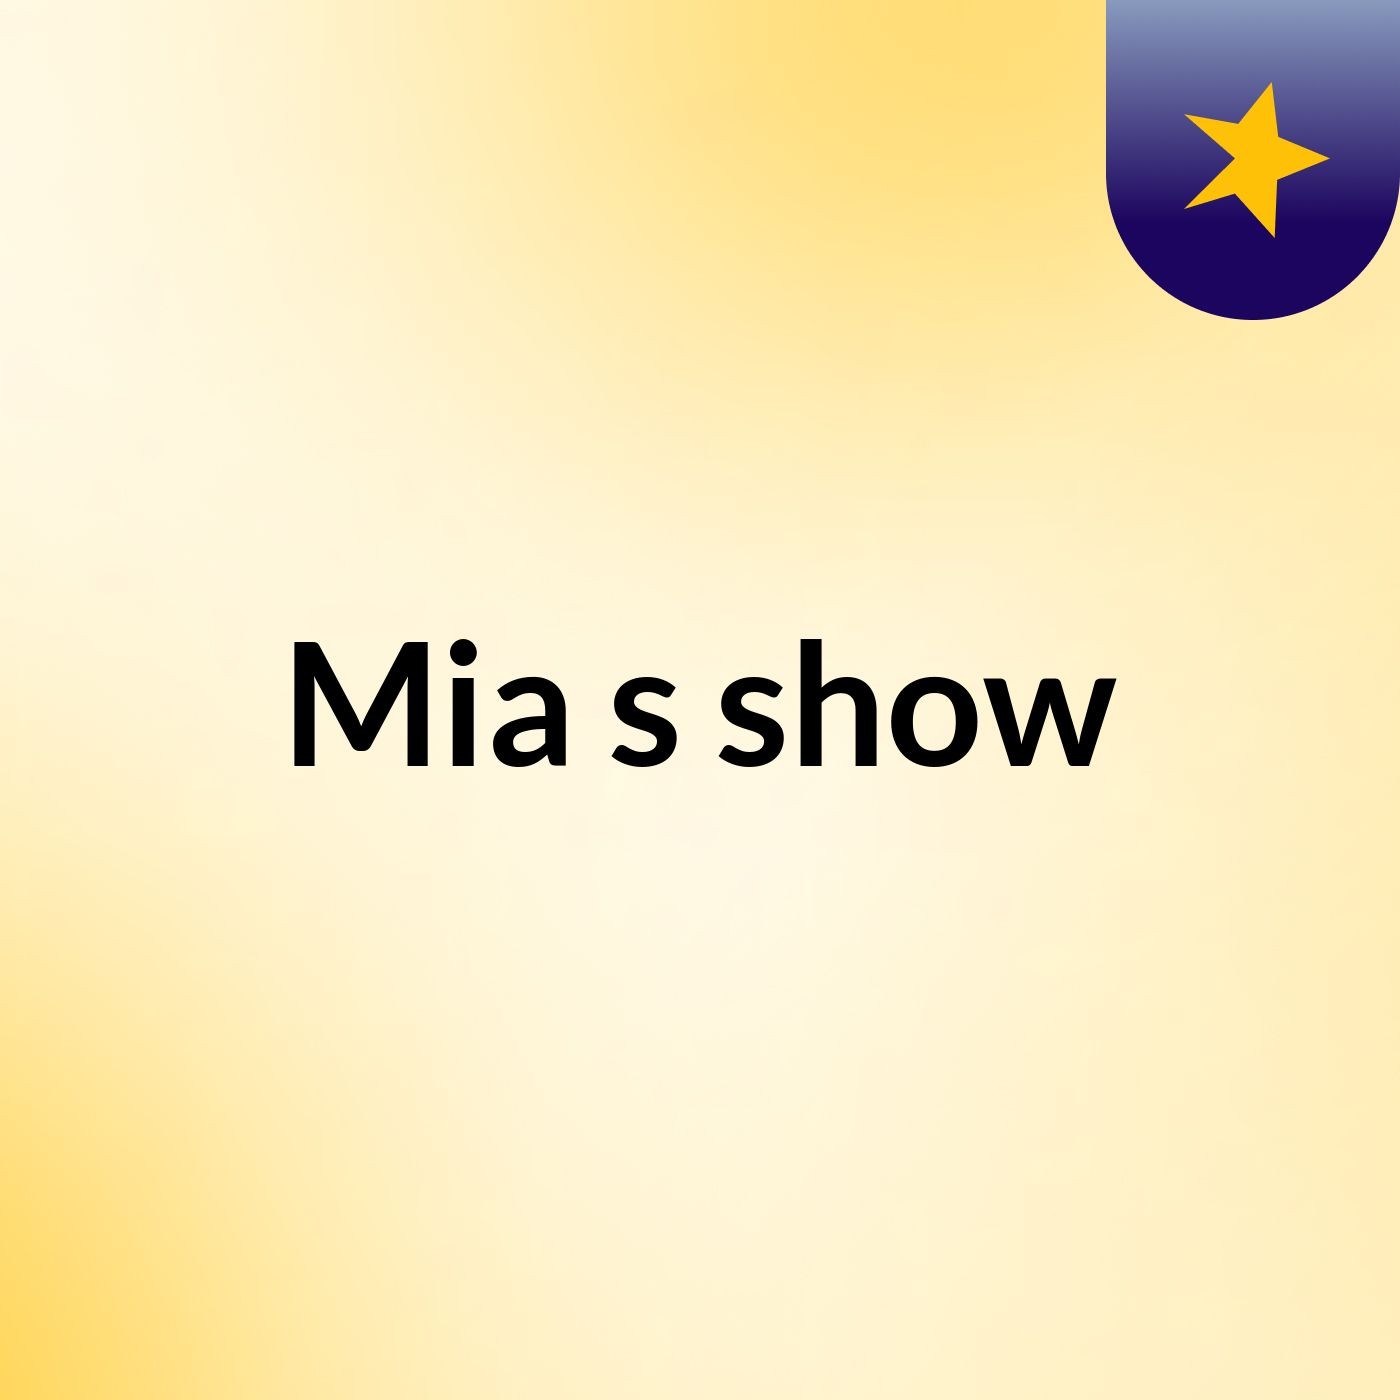 Mia's show